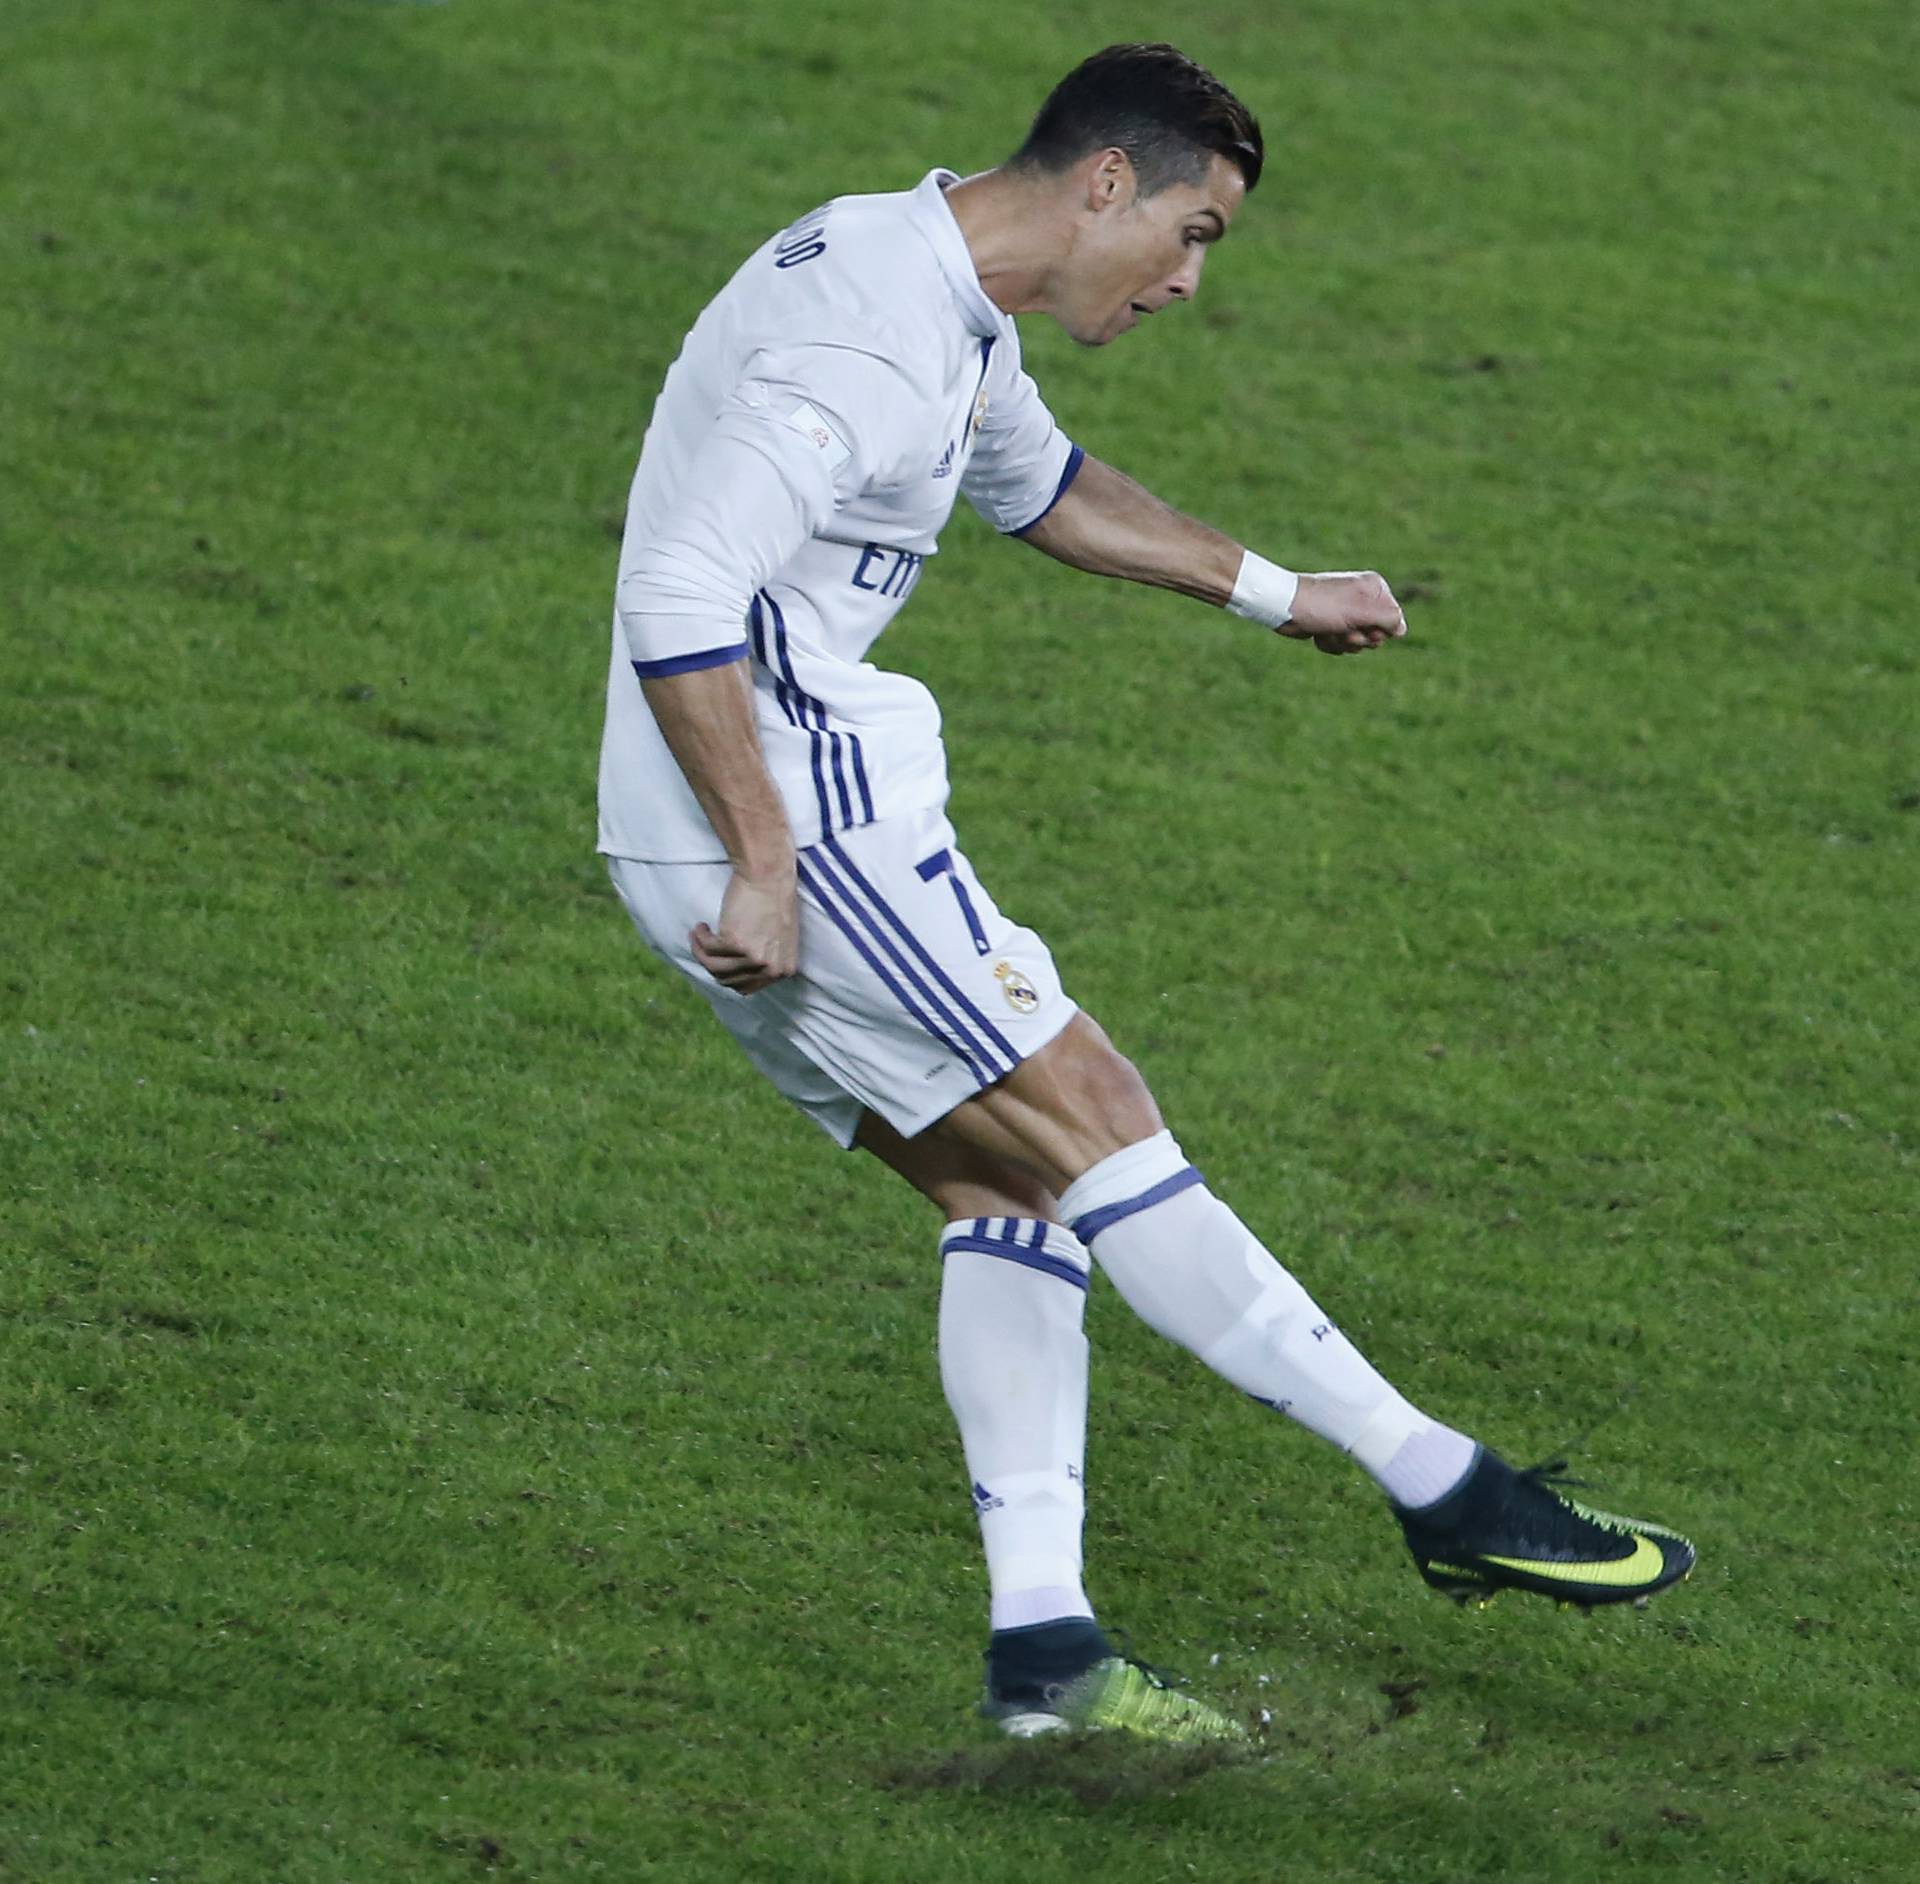 Real Madrid's Cristiano Ronaldo shoots with a free kick